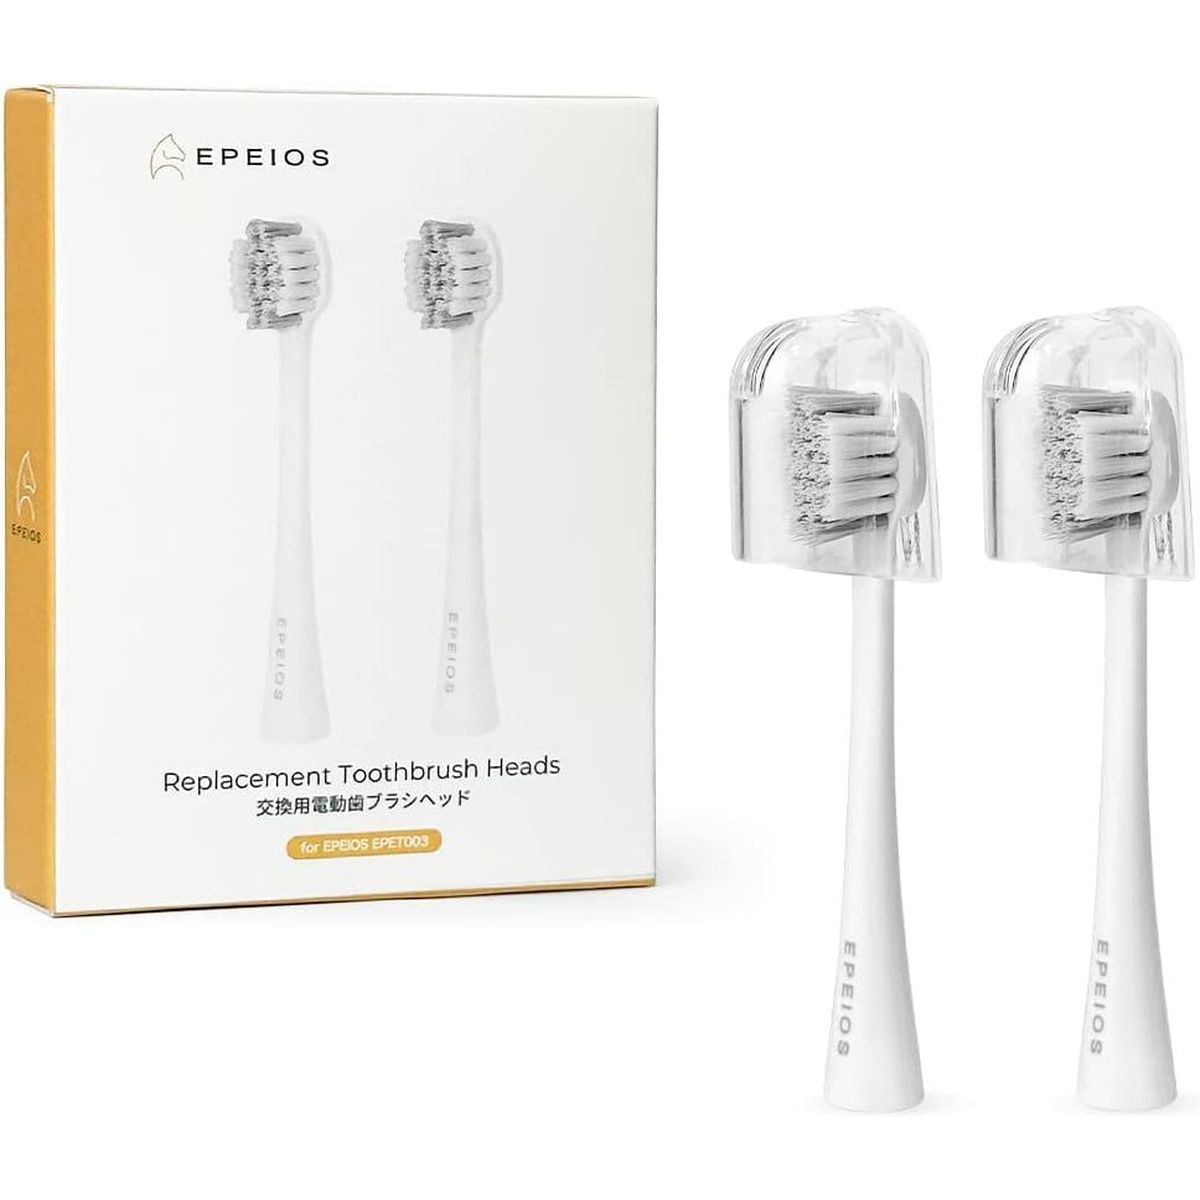 EPEIOS 音波式電動歯ブラシ 替ブラシヘッド 2本 コンパクトサイズ ホワイト